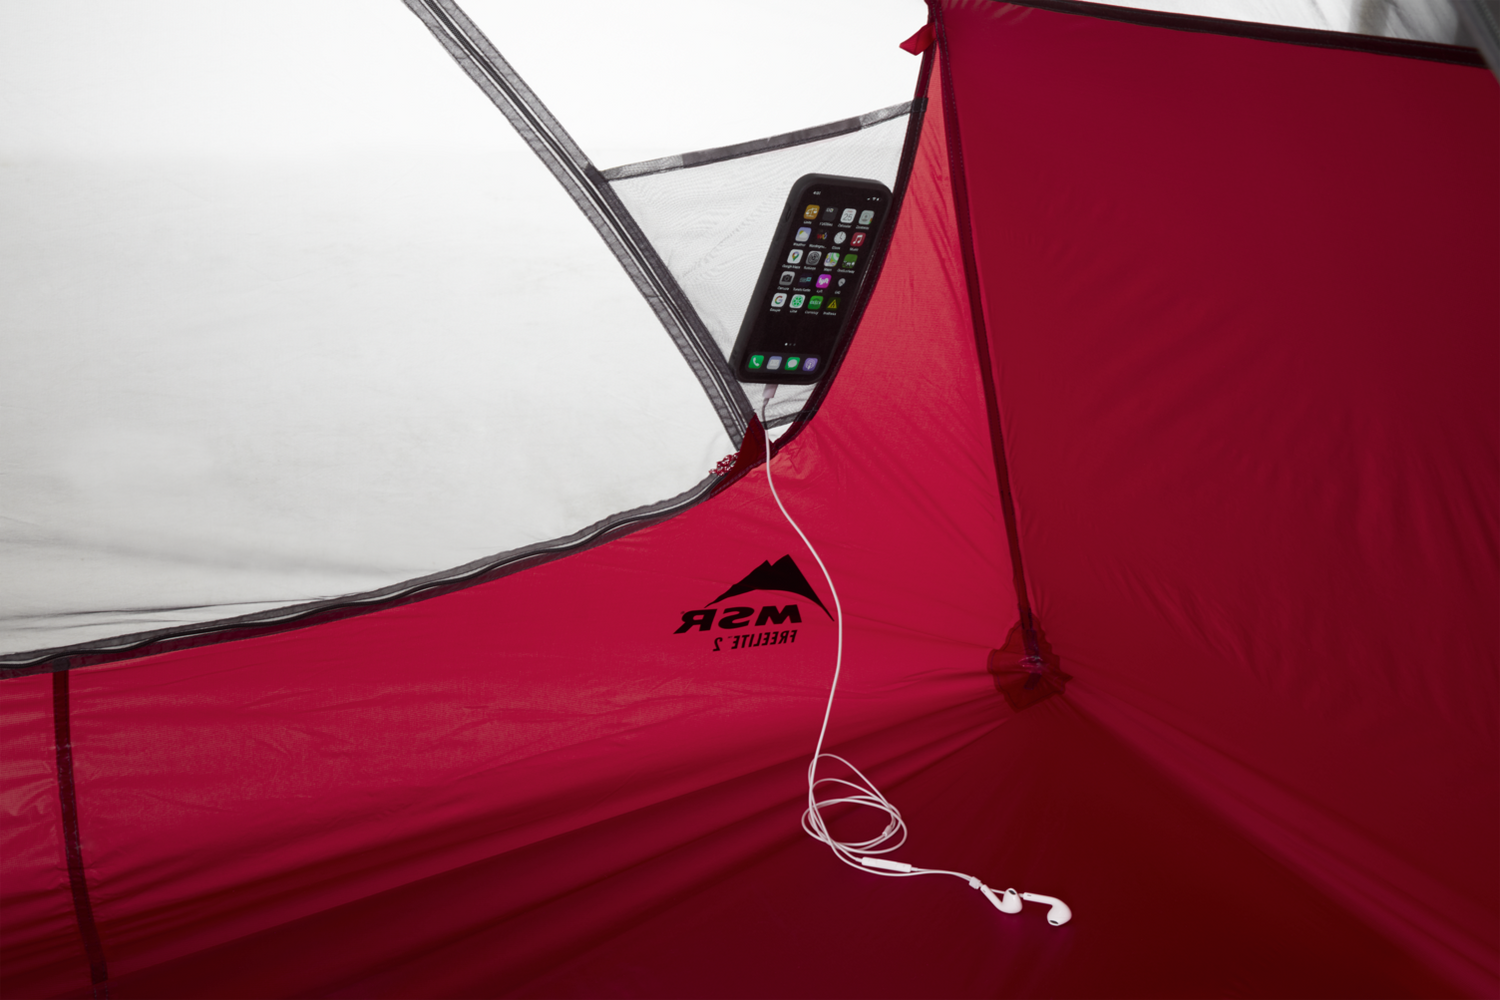 MSR FreeLite 3 Green Tent V3